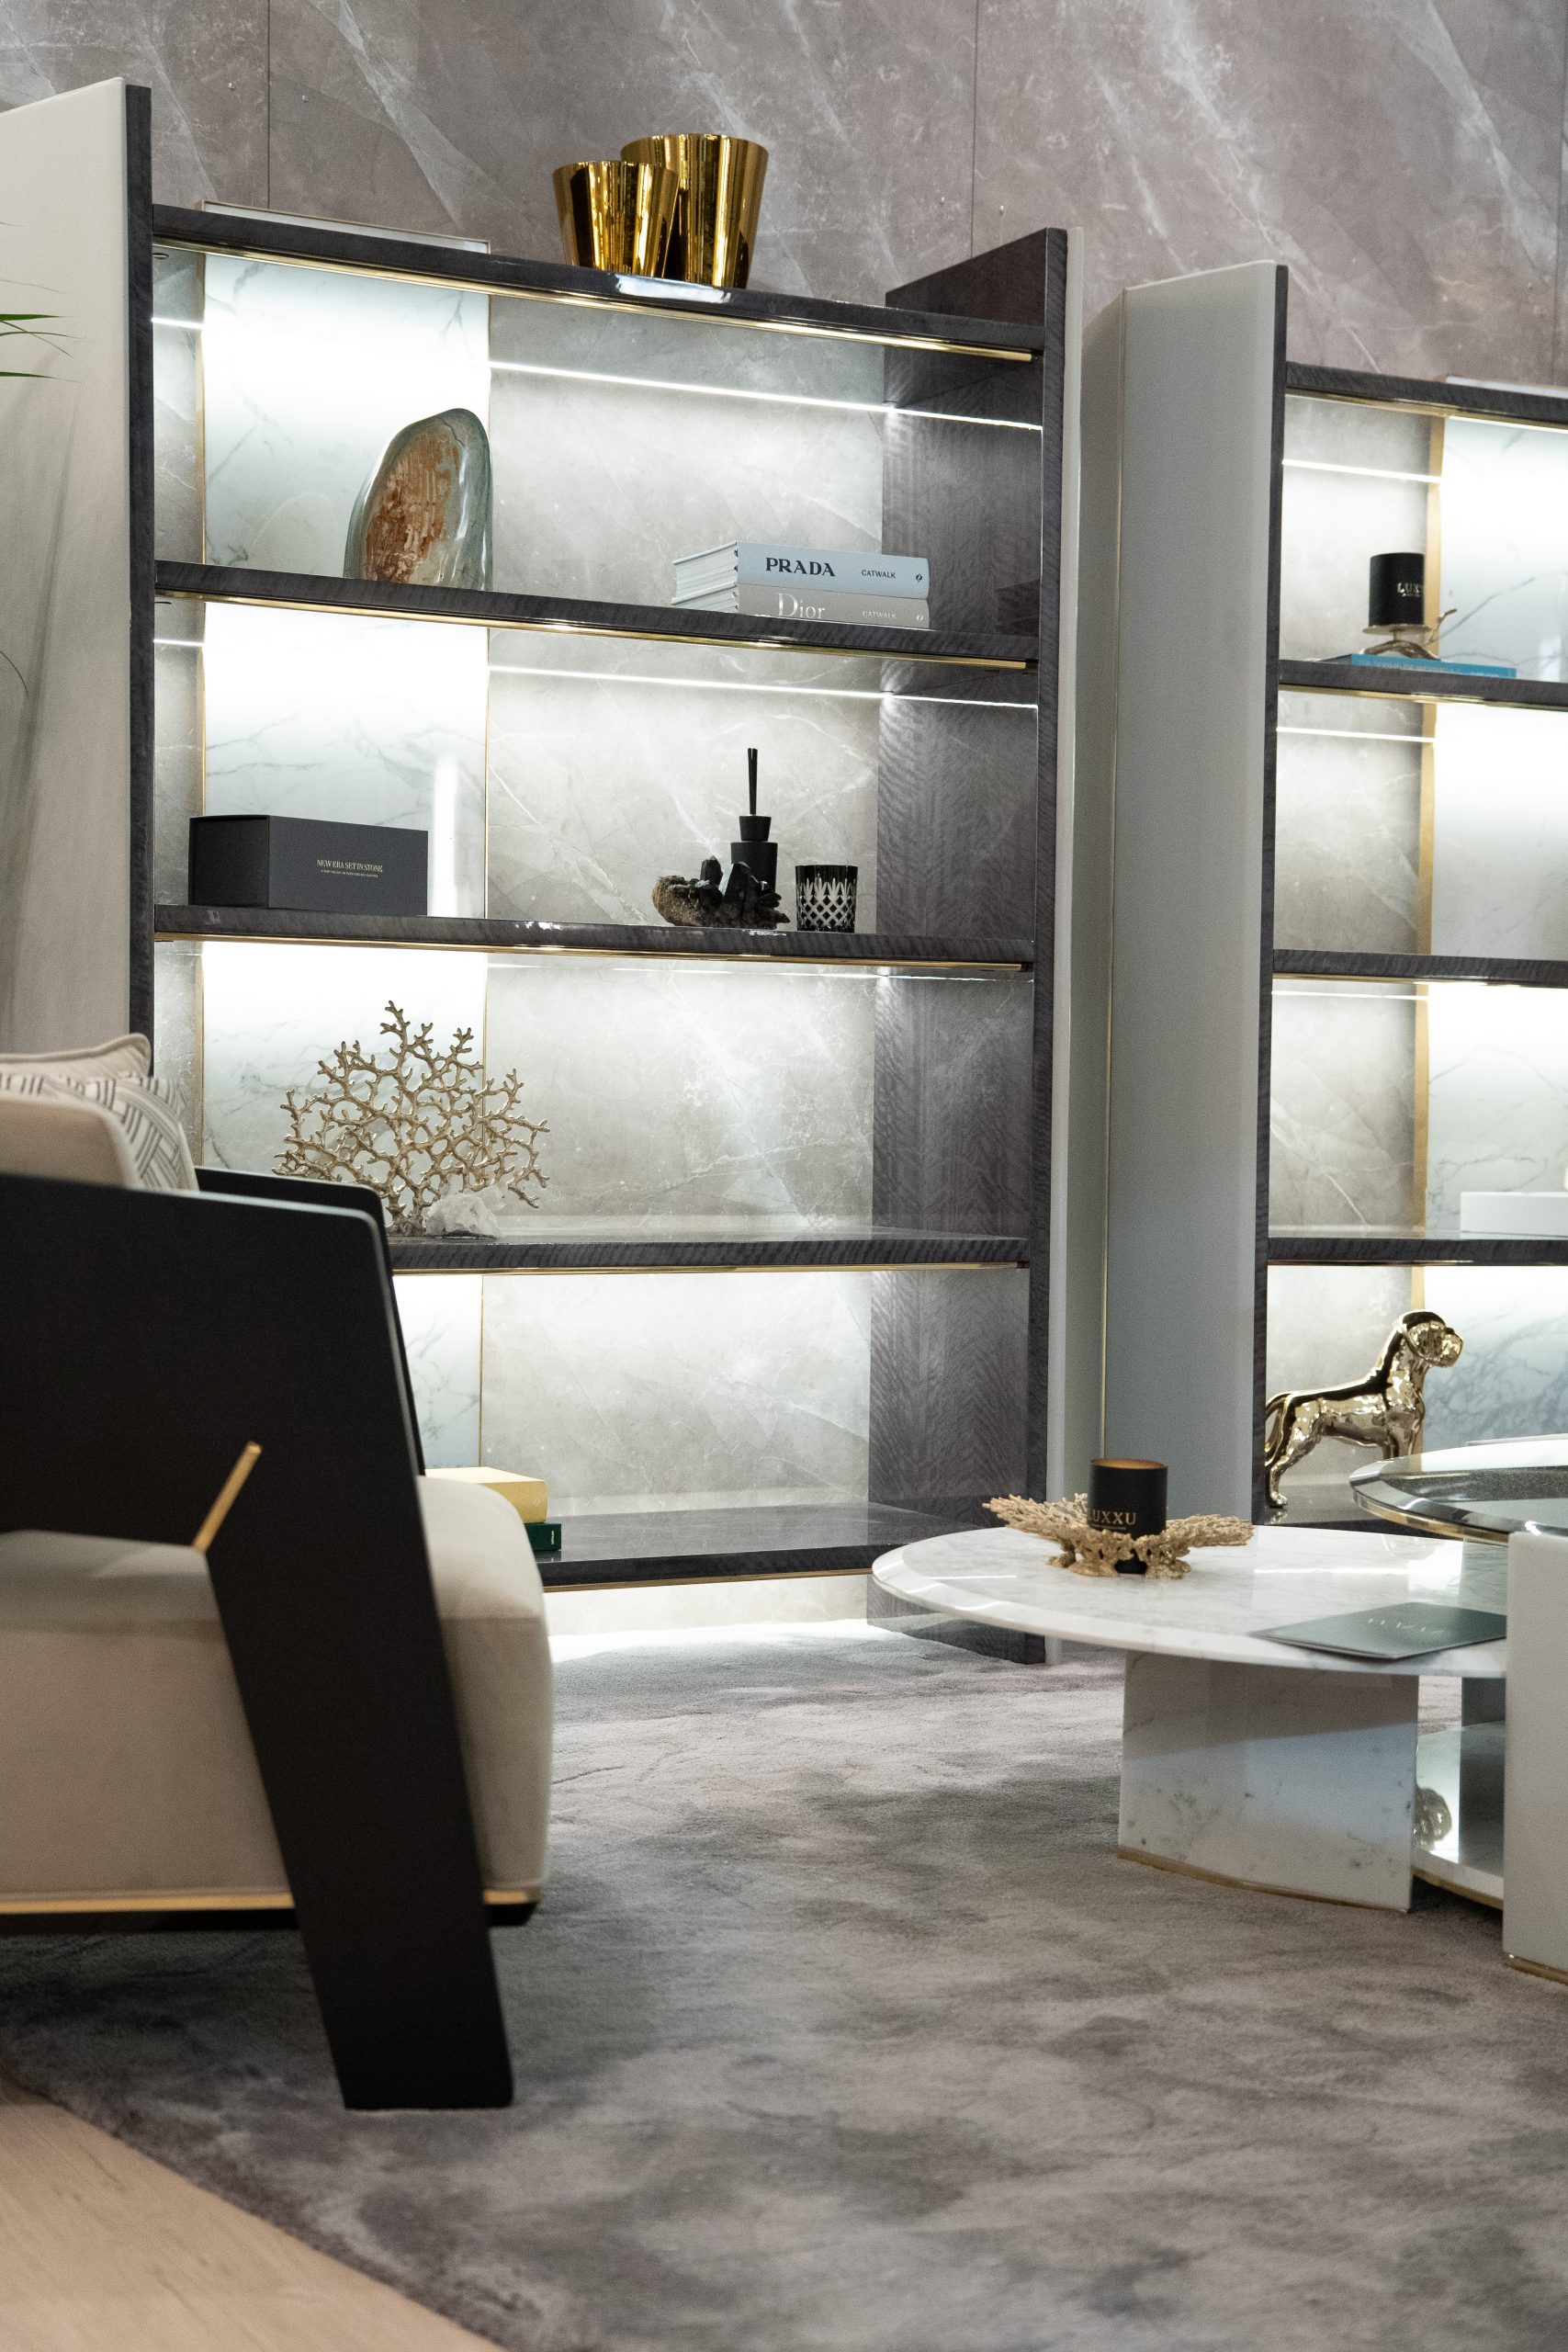 LUXXU Set It In Stone - Salone del Mobile 2022 Living Area